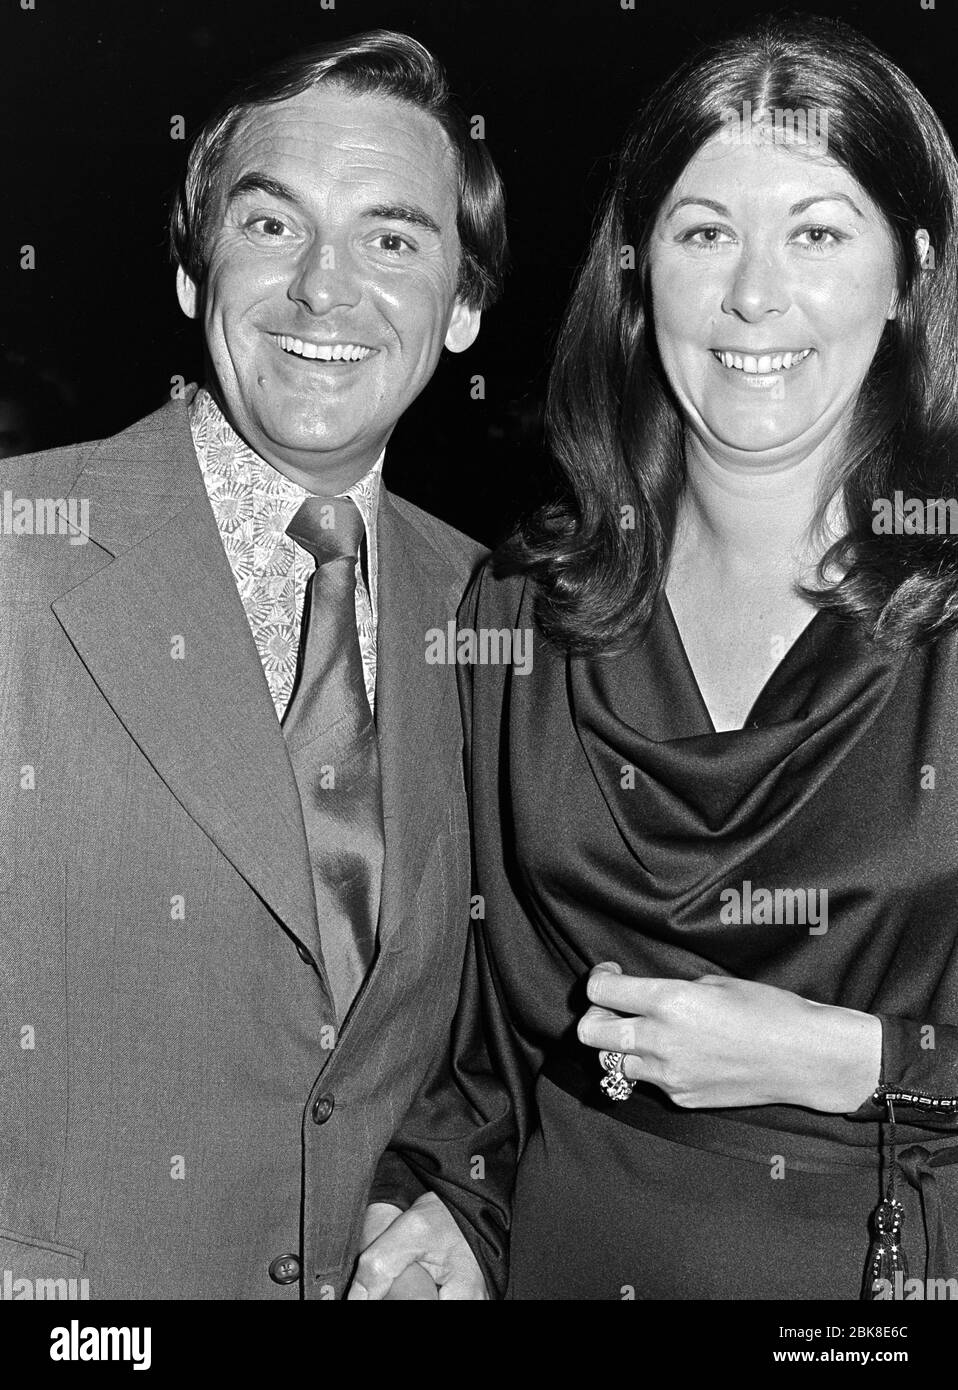 LONDRA, REGNO UNITO. Ottobre 1974: Comico Bob Monkhouse & moglie alla prima di 'that's Entertainment' a Londra. Foto file © Paul Smith/Featureflash Foto Stock